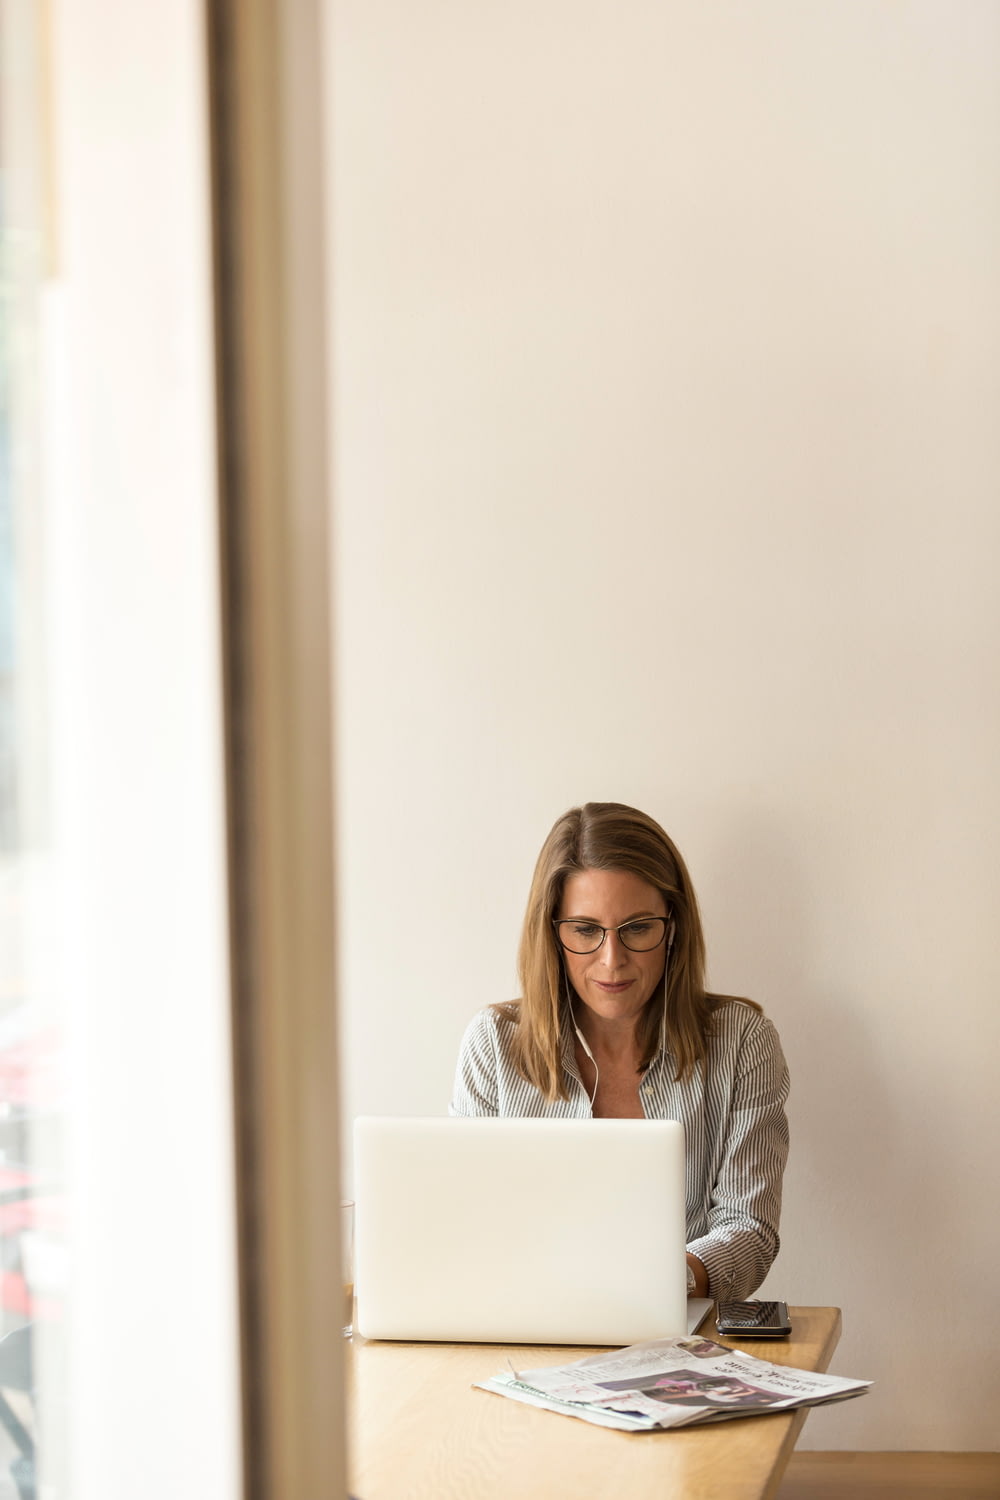 회색 줄무늬 드레스 셔츠를 입은 여자가 흰색 노트북 컴퓨터 앞에서 갈색 나무 테이블 근처에 앉아 있습니다.